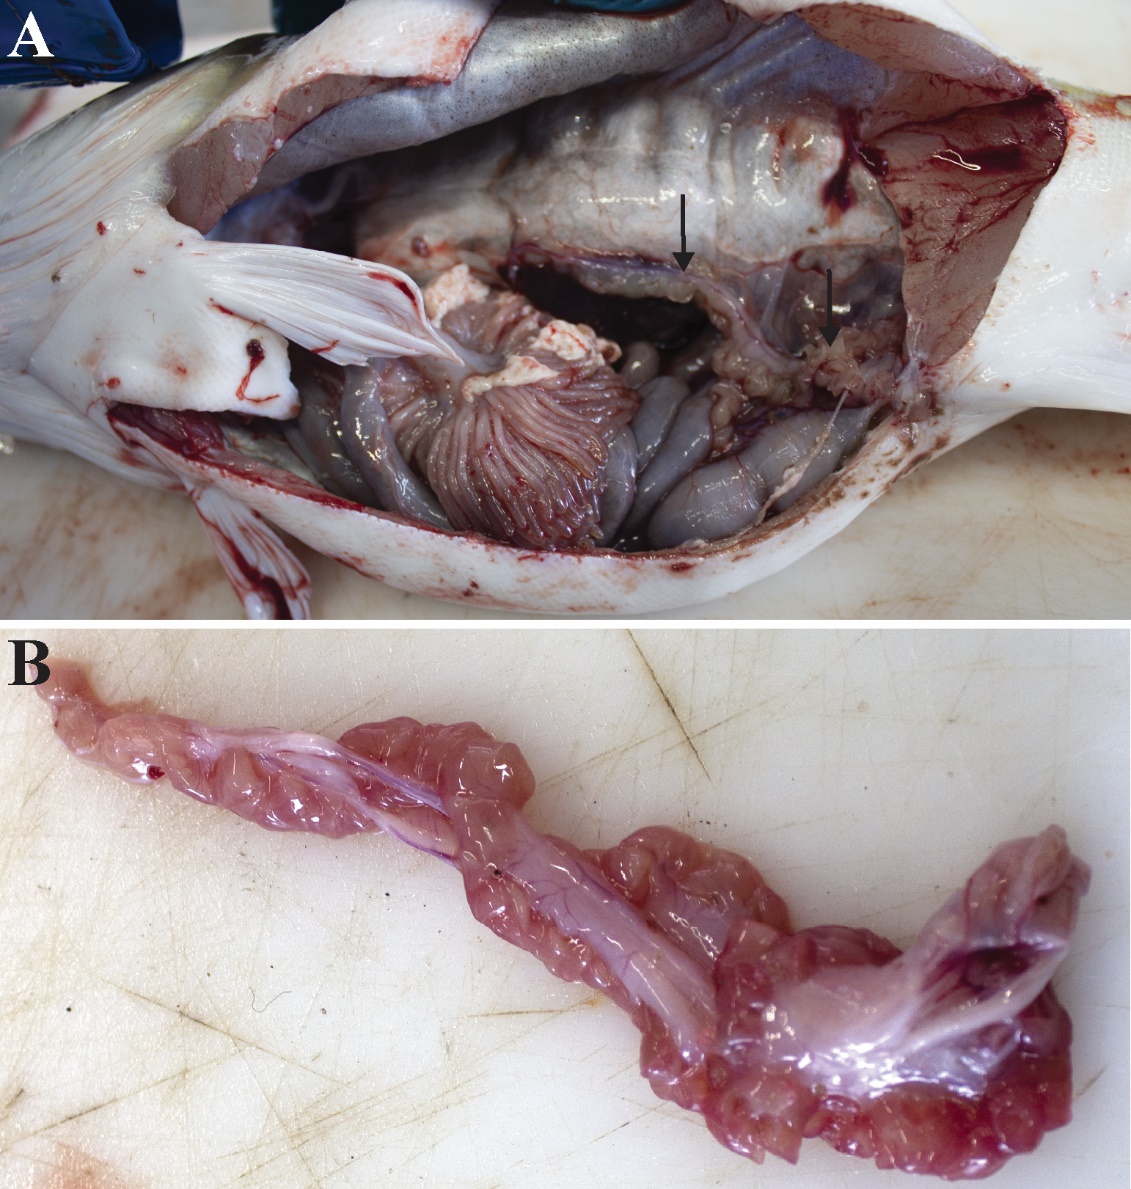 Figuren viser et fotografi av en hanntorsk åpnet ventralt og på siden, slik at man kan se organene i bukhulen, spesielt testiklene som ligger langs svømmeblæren. Et annet fotografi viser en testikkel med tomme og røde lobber.